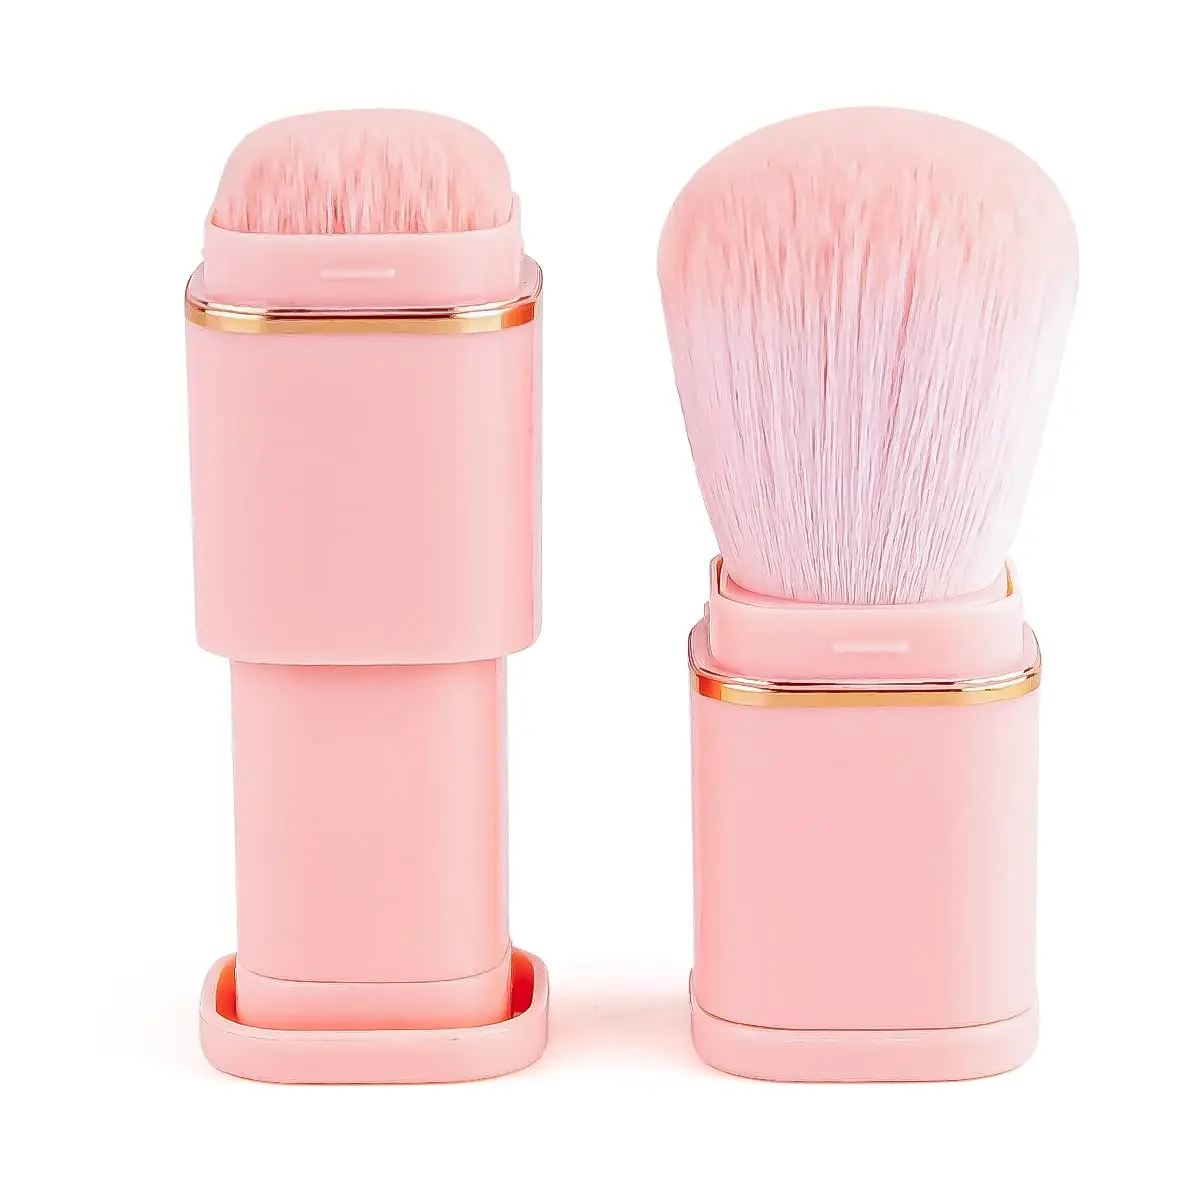 

Retractable Face Kabuki Brush Mini Travel Size Blusher Brush Pink Portable Powder Makeup Brush Set